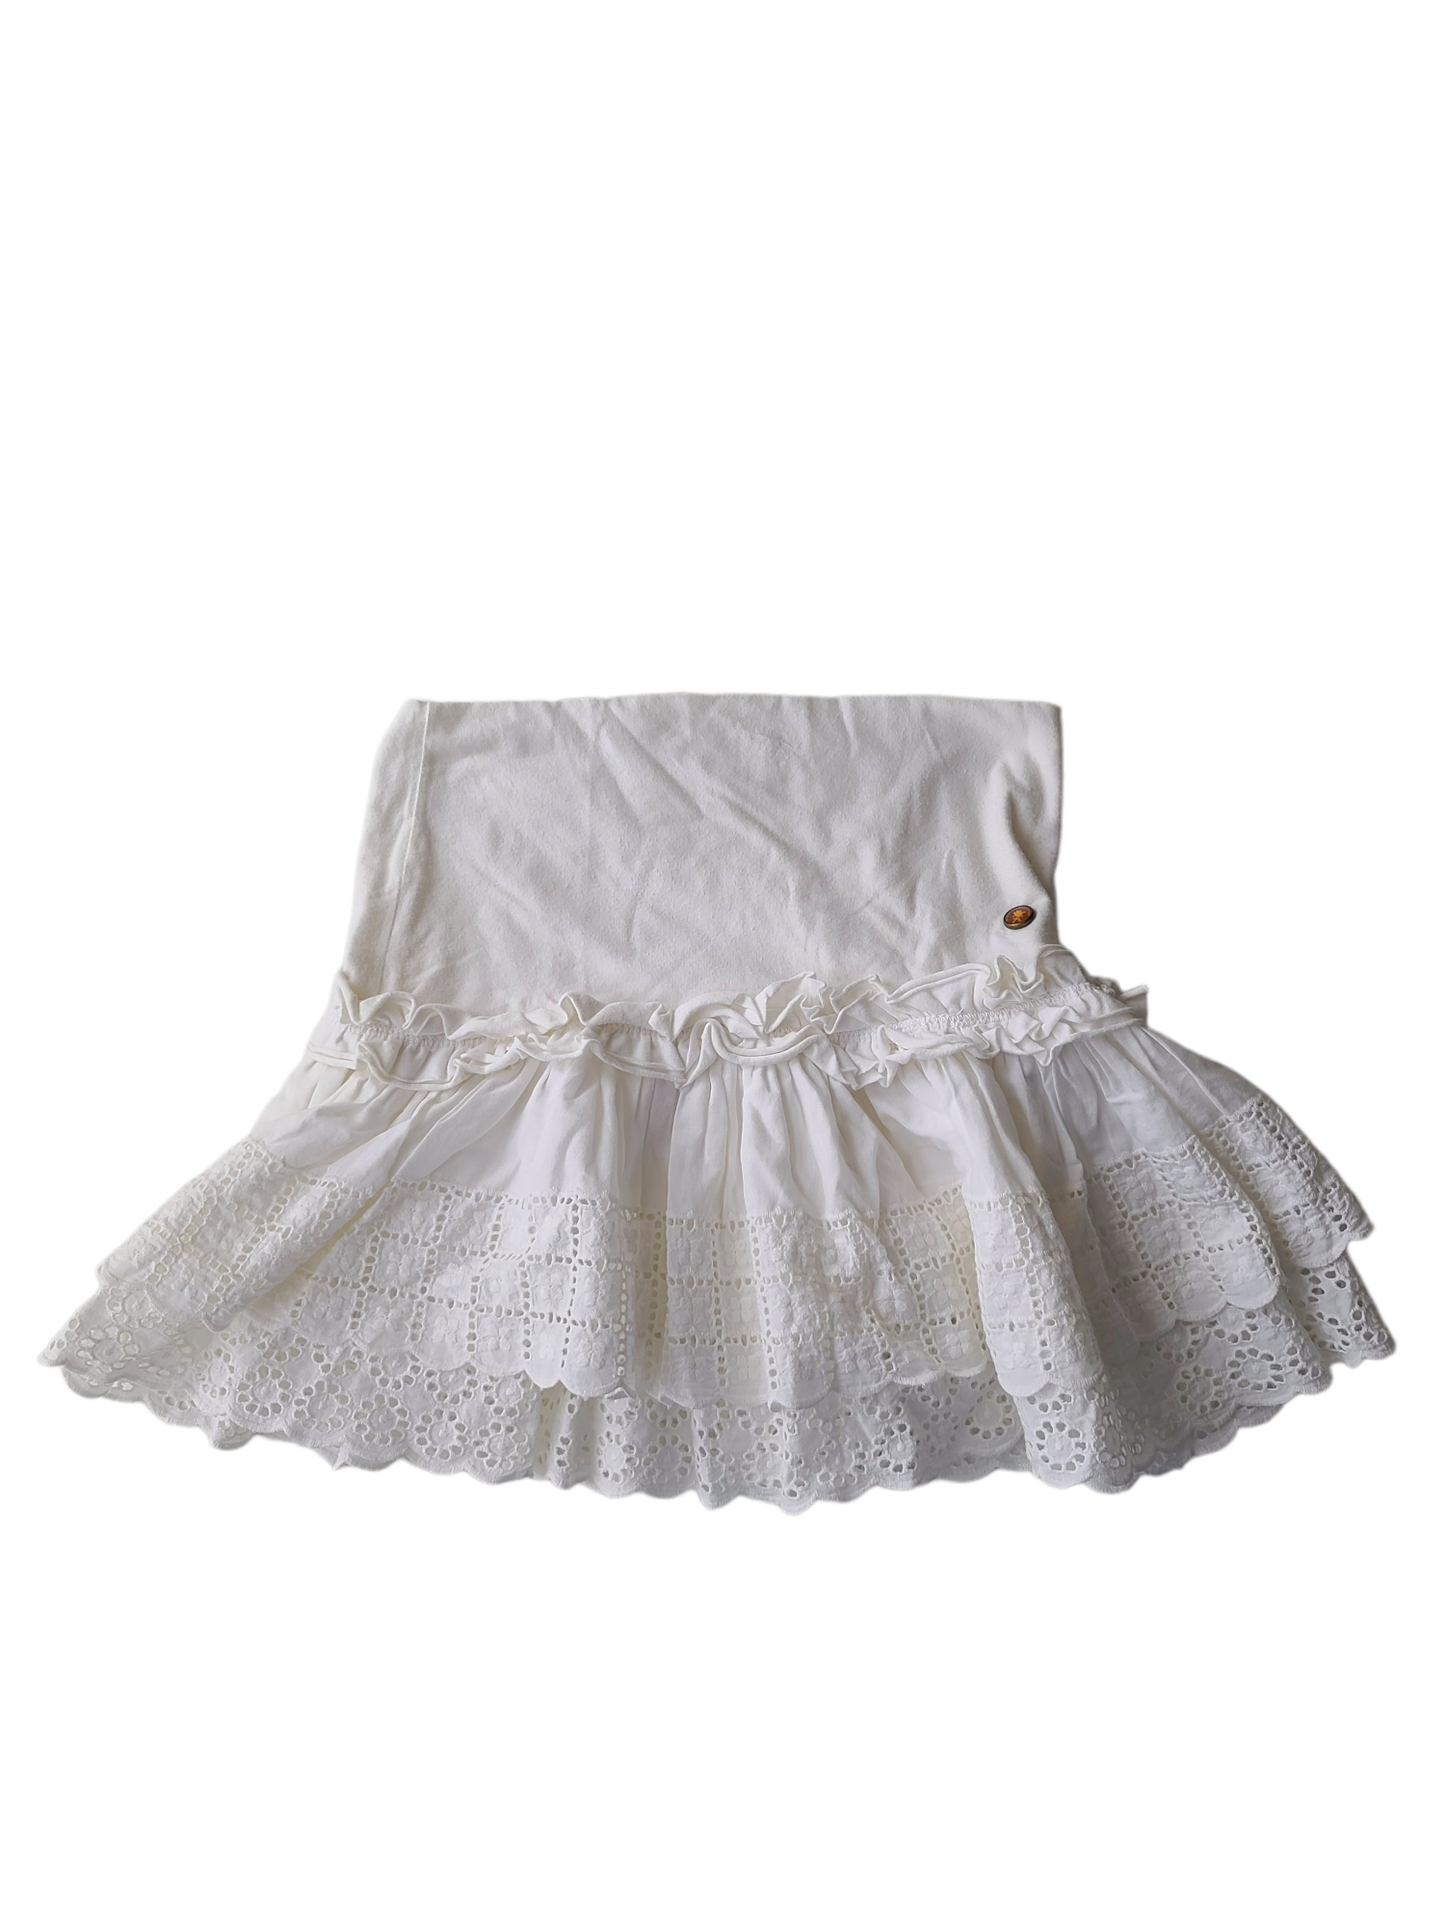 Coquette white skirt mini jupe blanche y2k cottagecore volants dentelle lace vintage